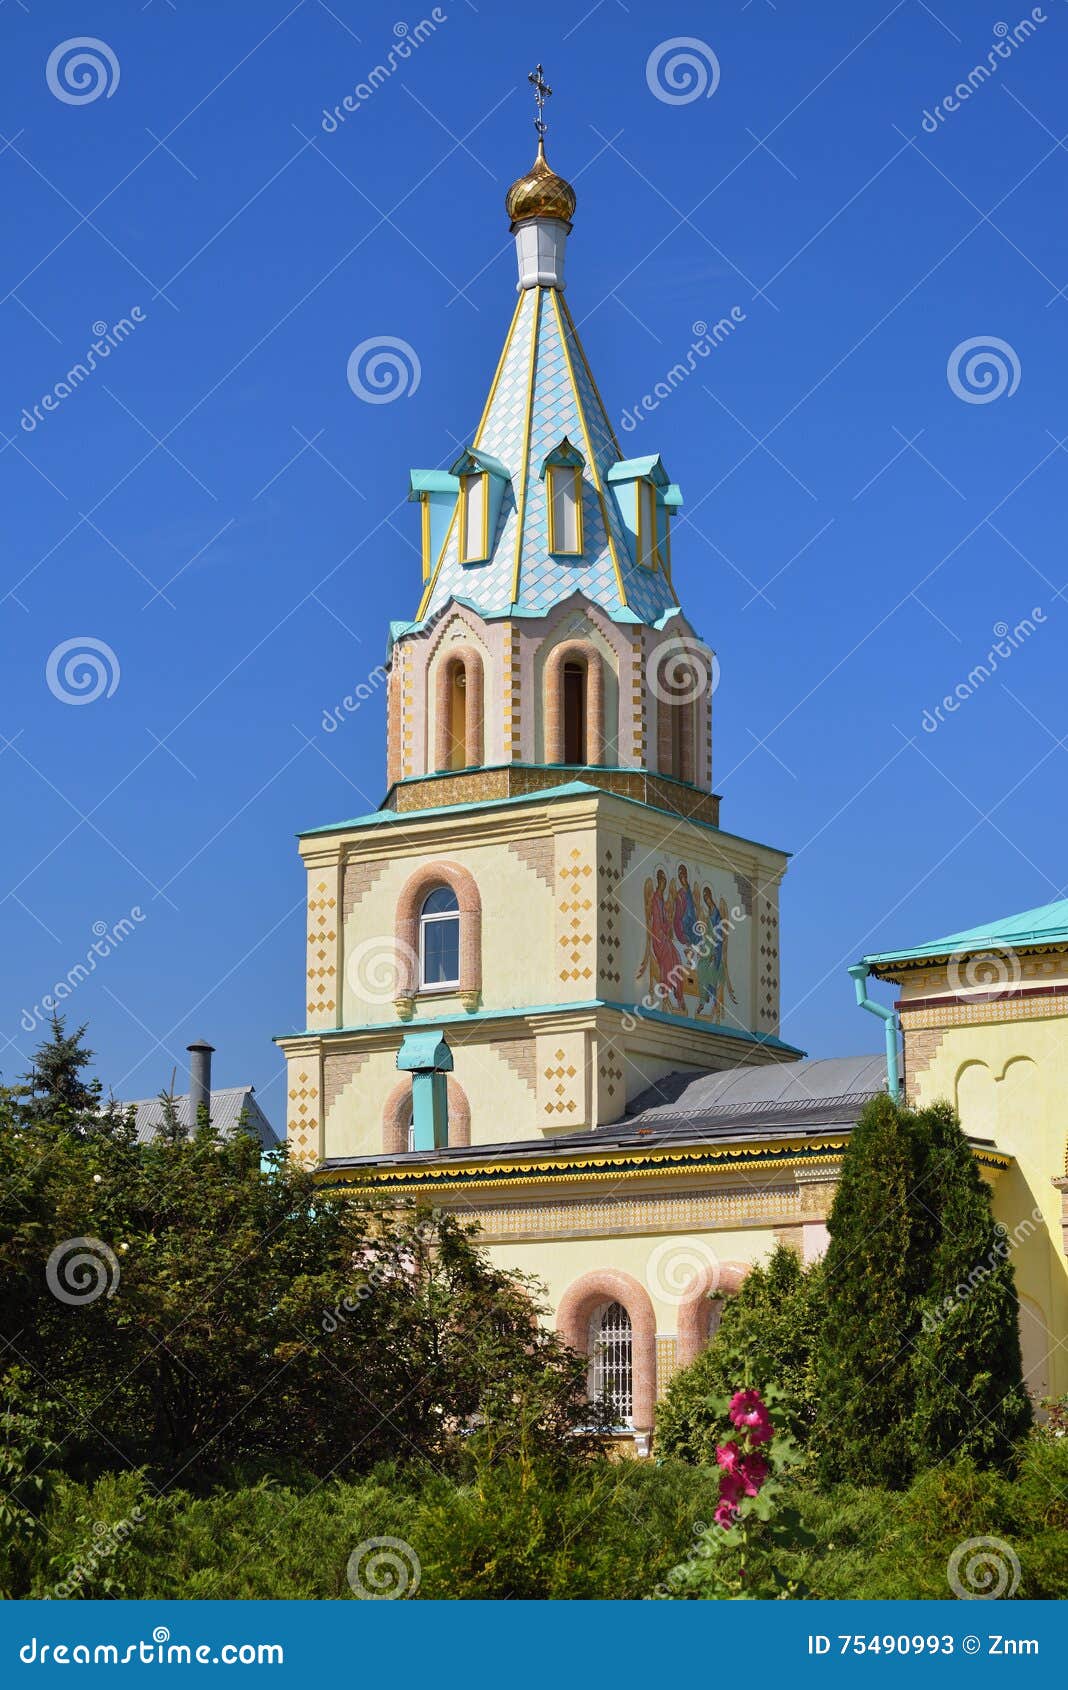 paraskeva church. russian eclecticism architecture